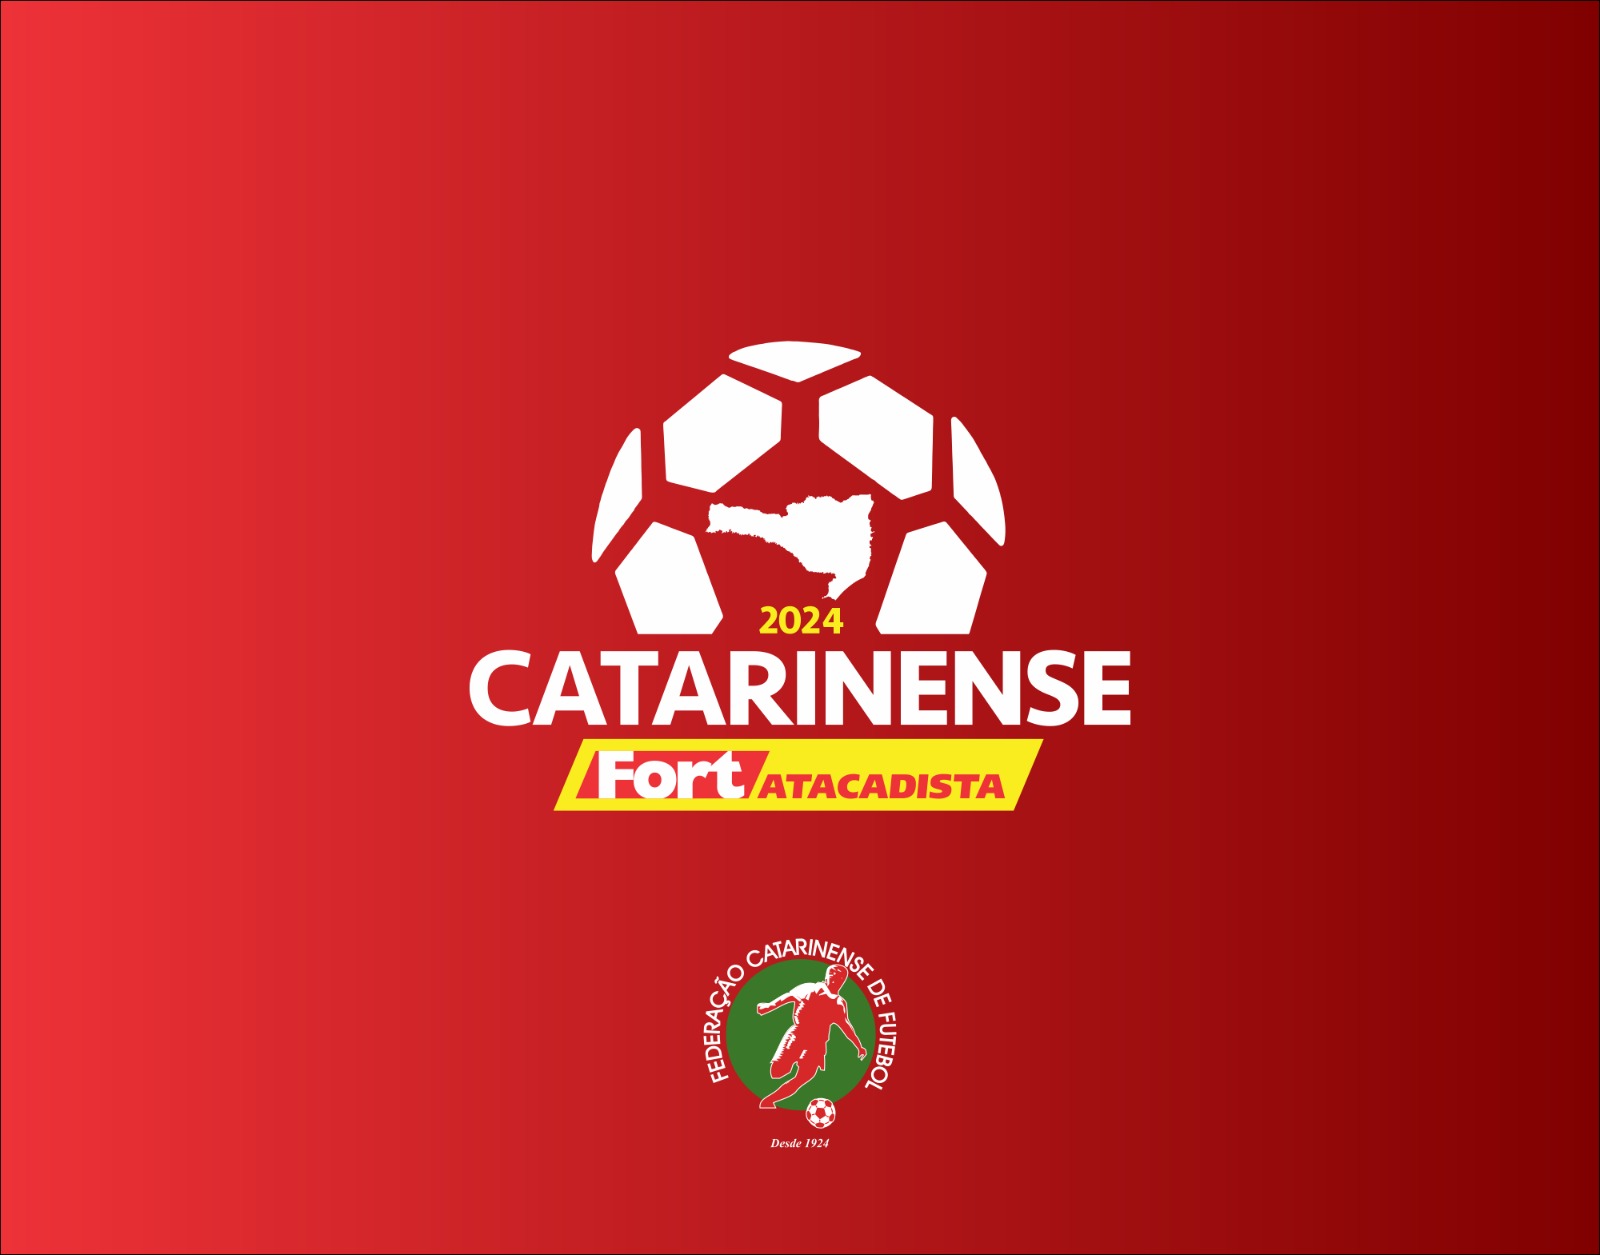 Campeonato Catarinense: Concórdia x Joinville - AO VIVO E COM IMAGENS 